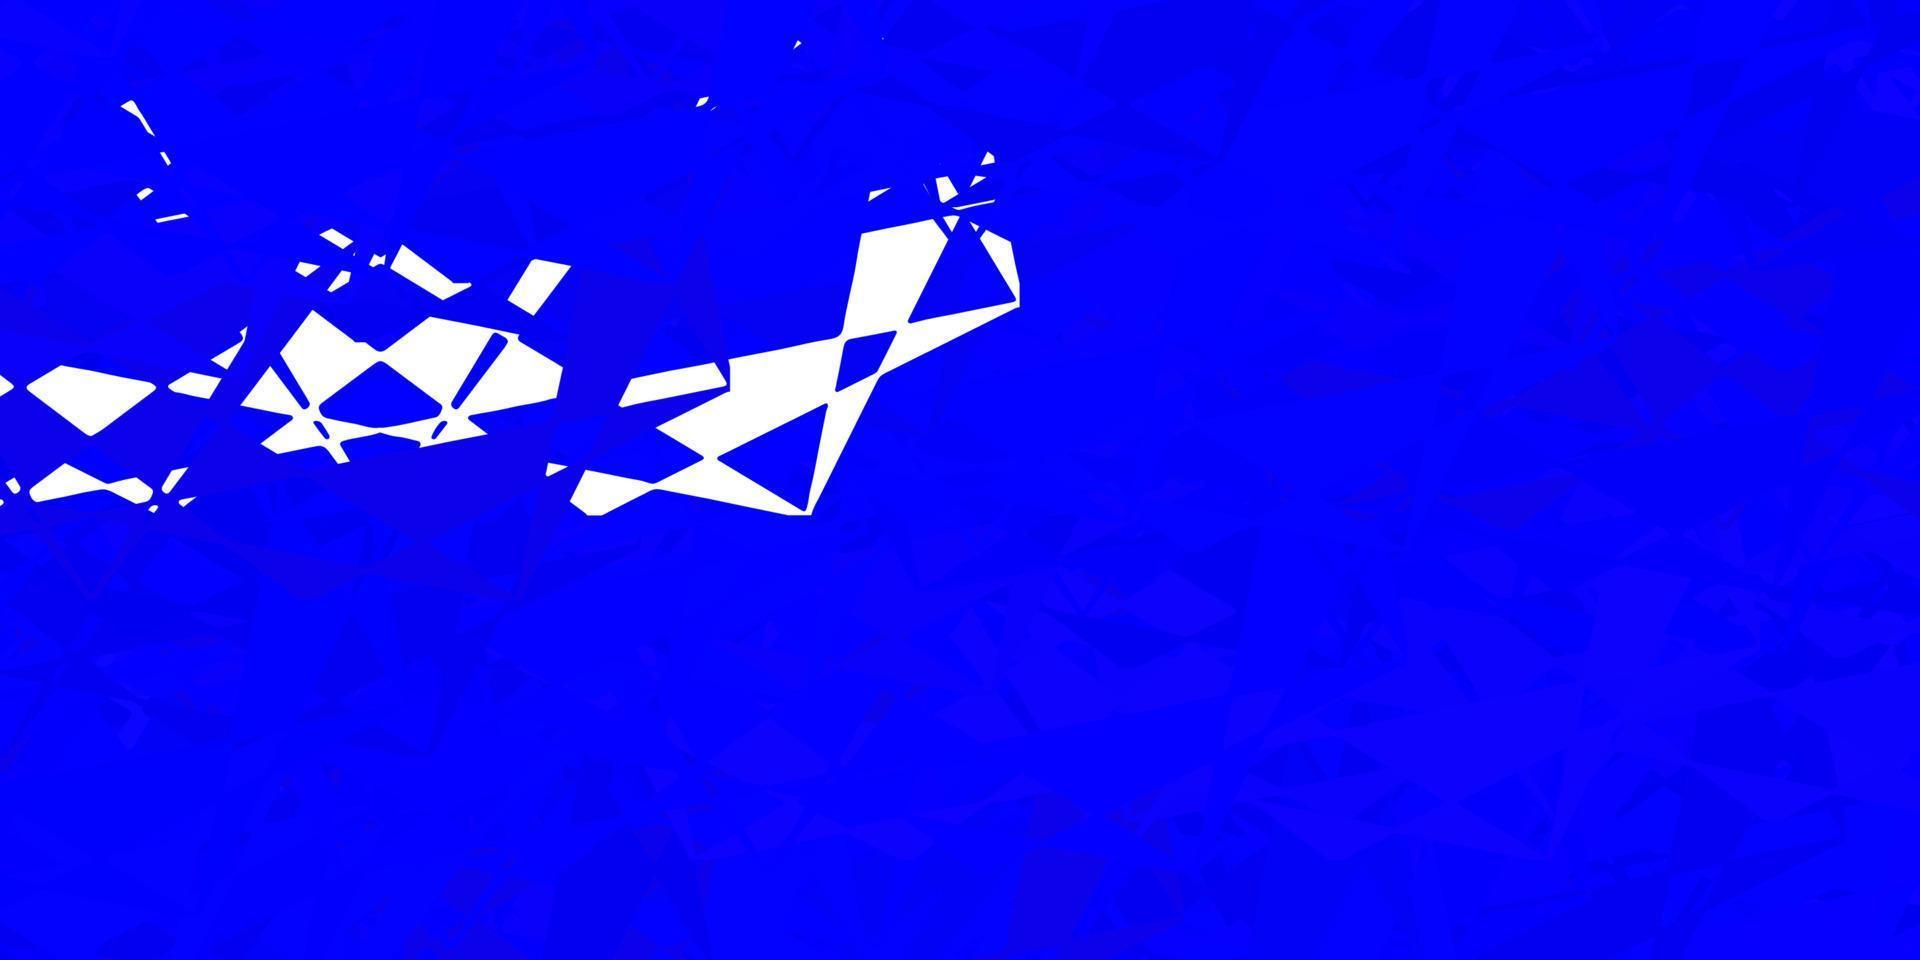 patrón de vector azul oscuro con formas poligonales.